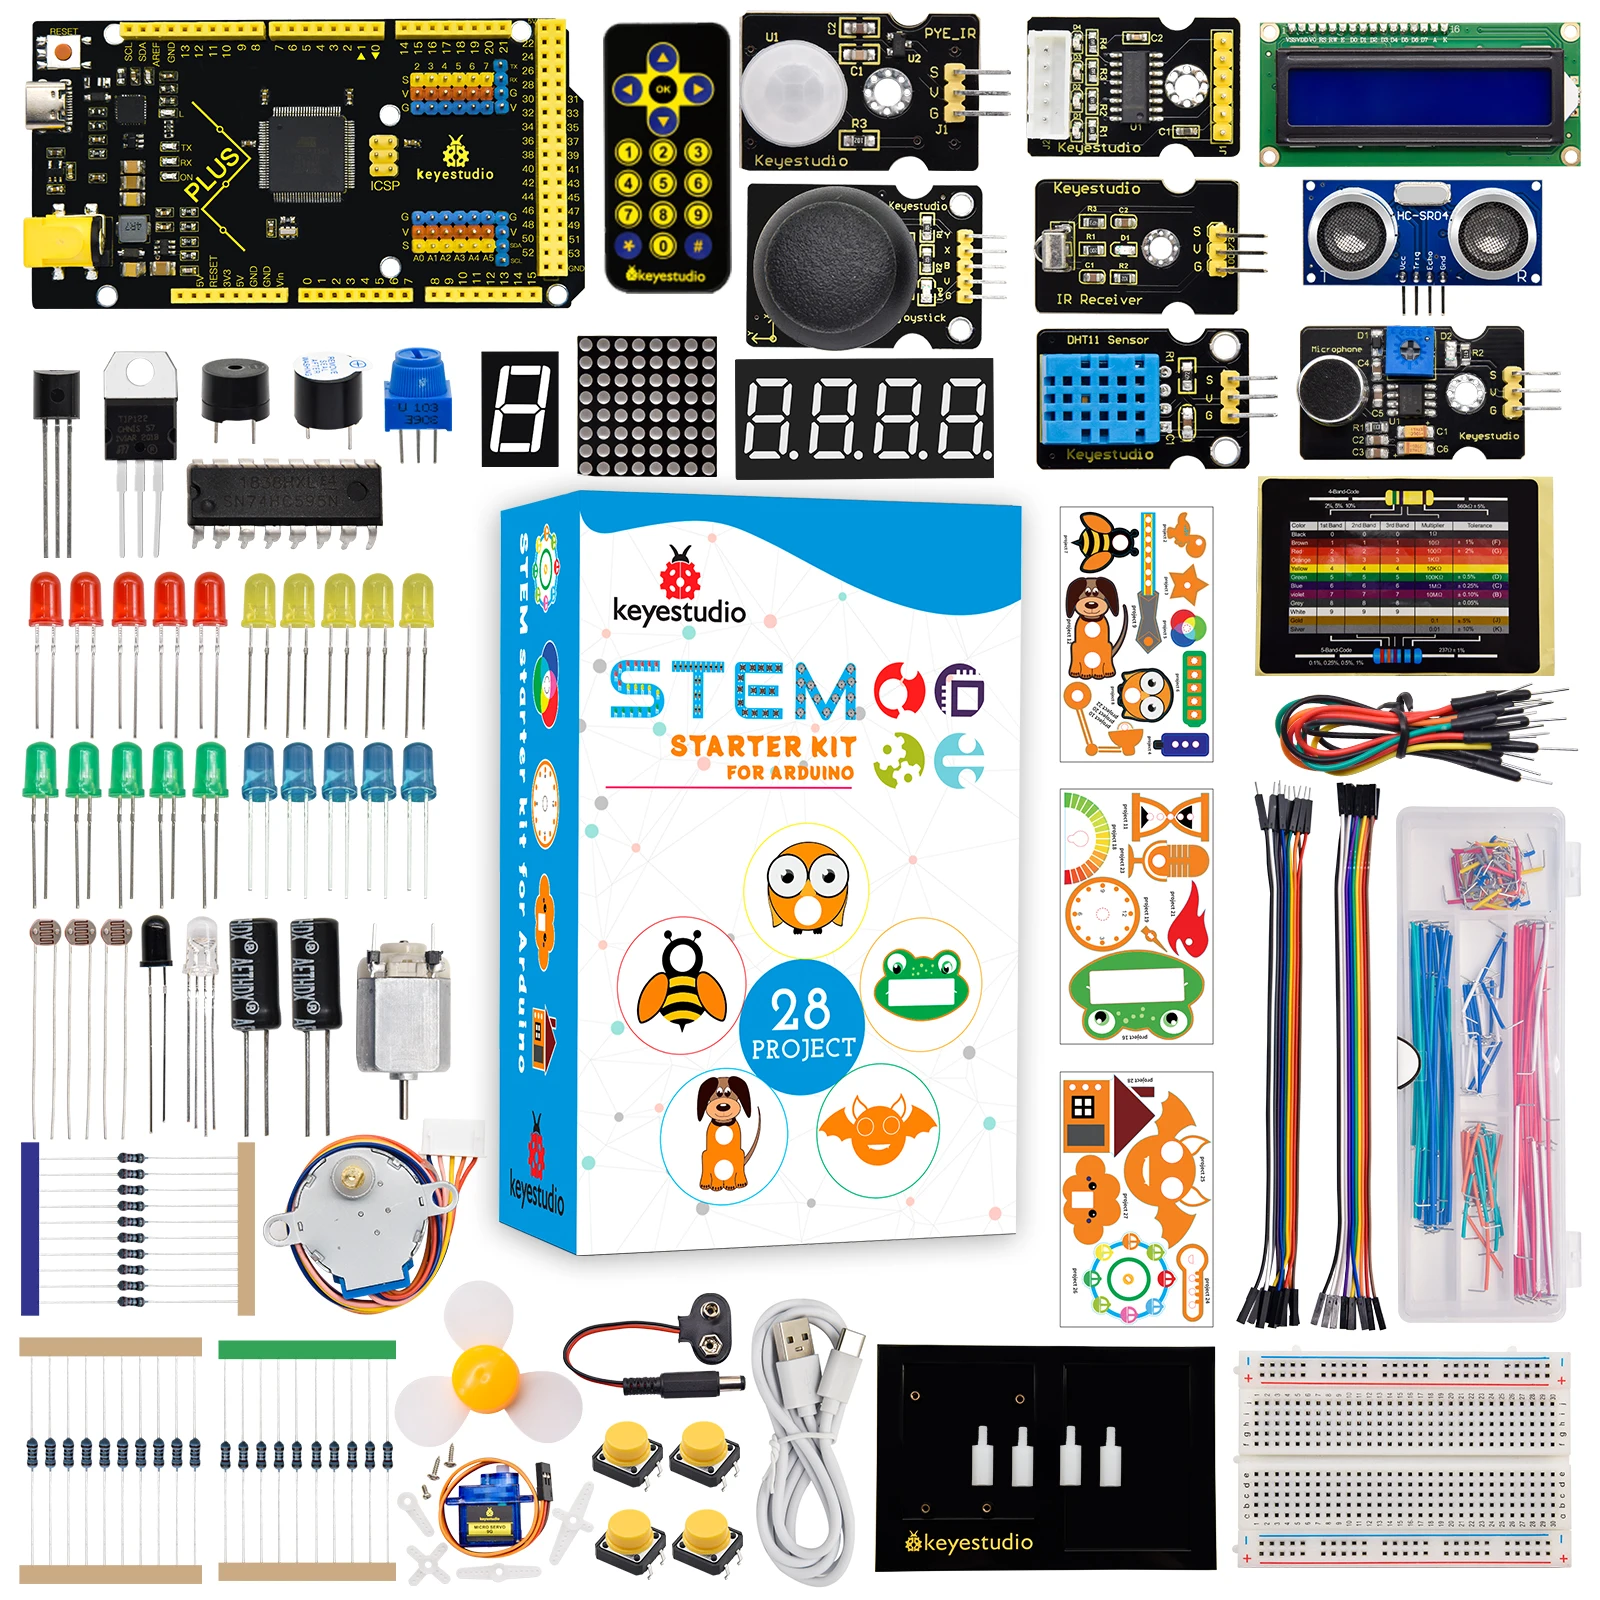 keyestudio-kit-completo-starter-stem-super-per-arduino-uno-mega-plus-board-kit-stater-di-programmazione-elettronica-fai-da-te-28-progetti